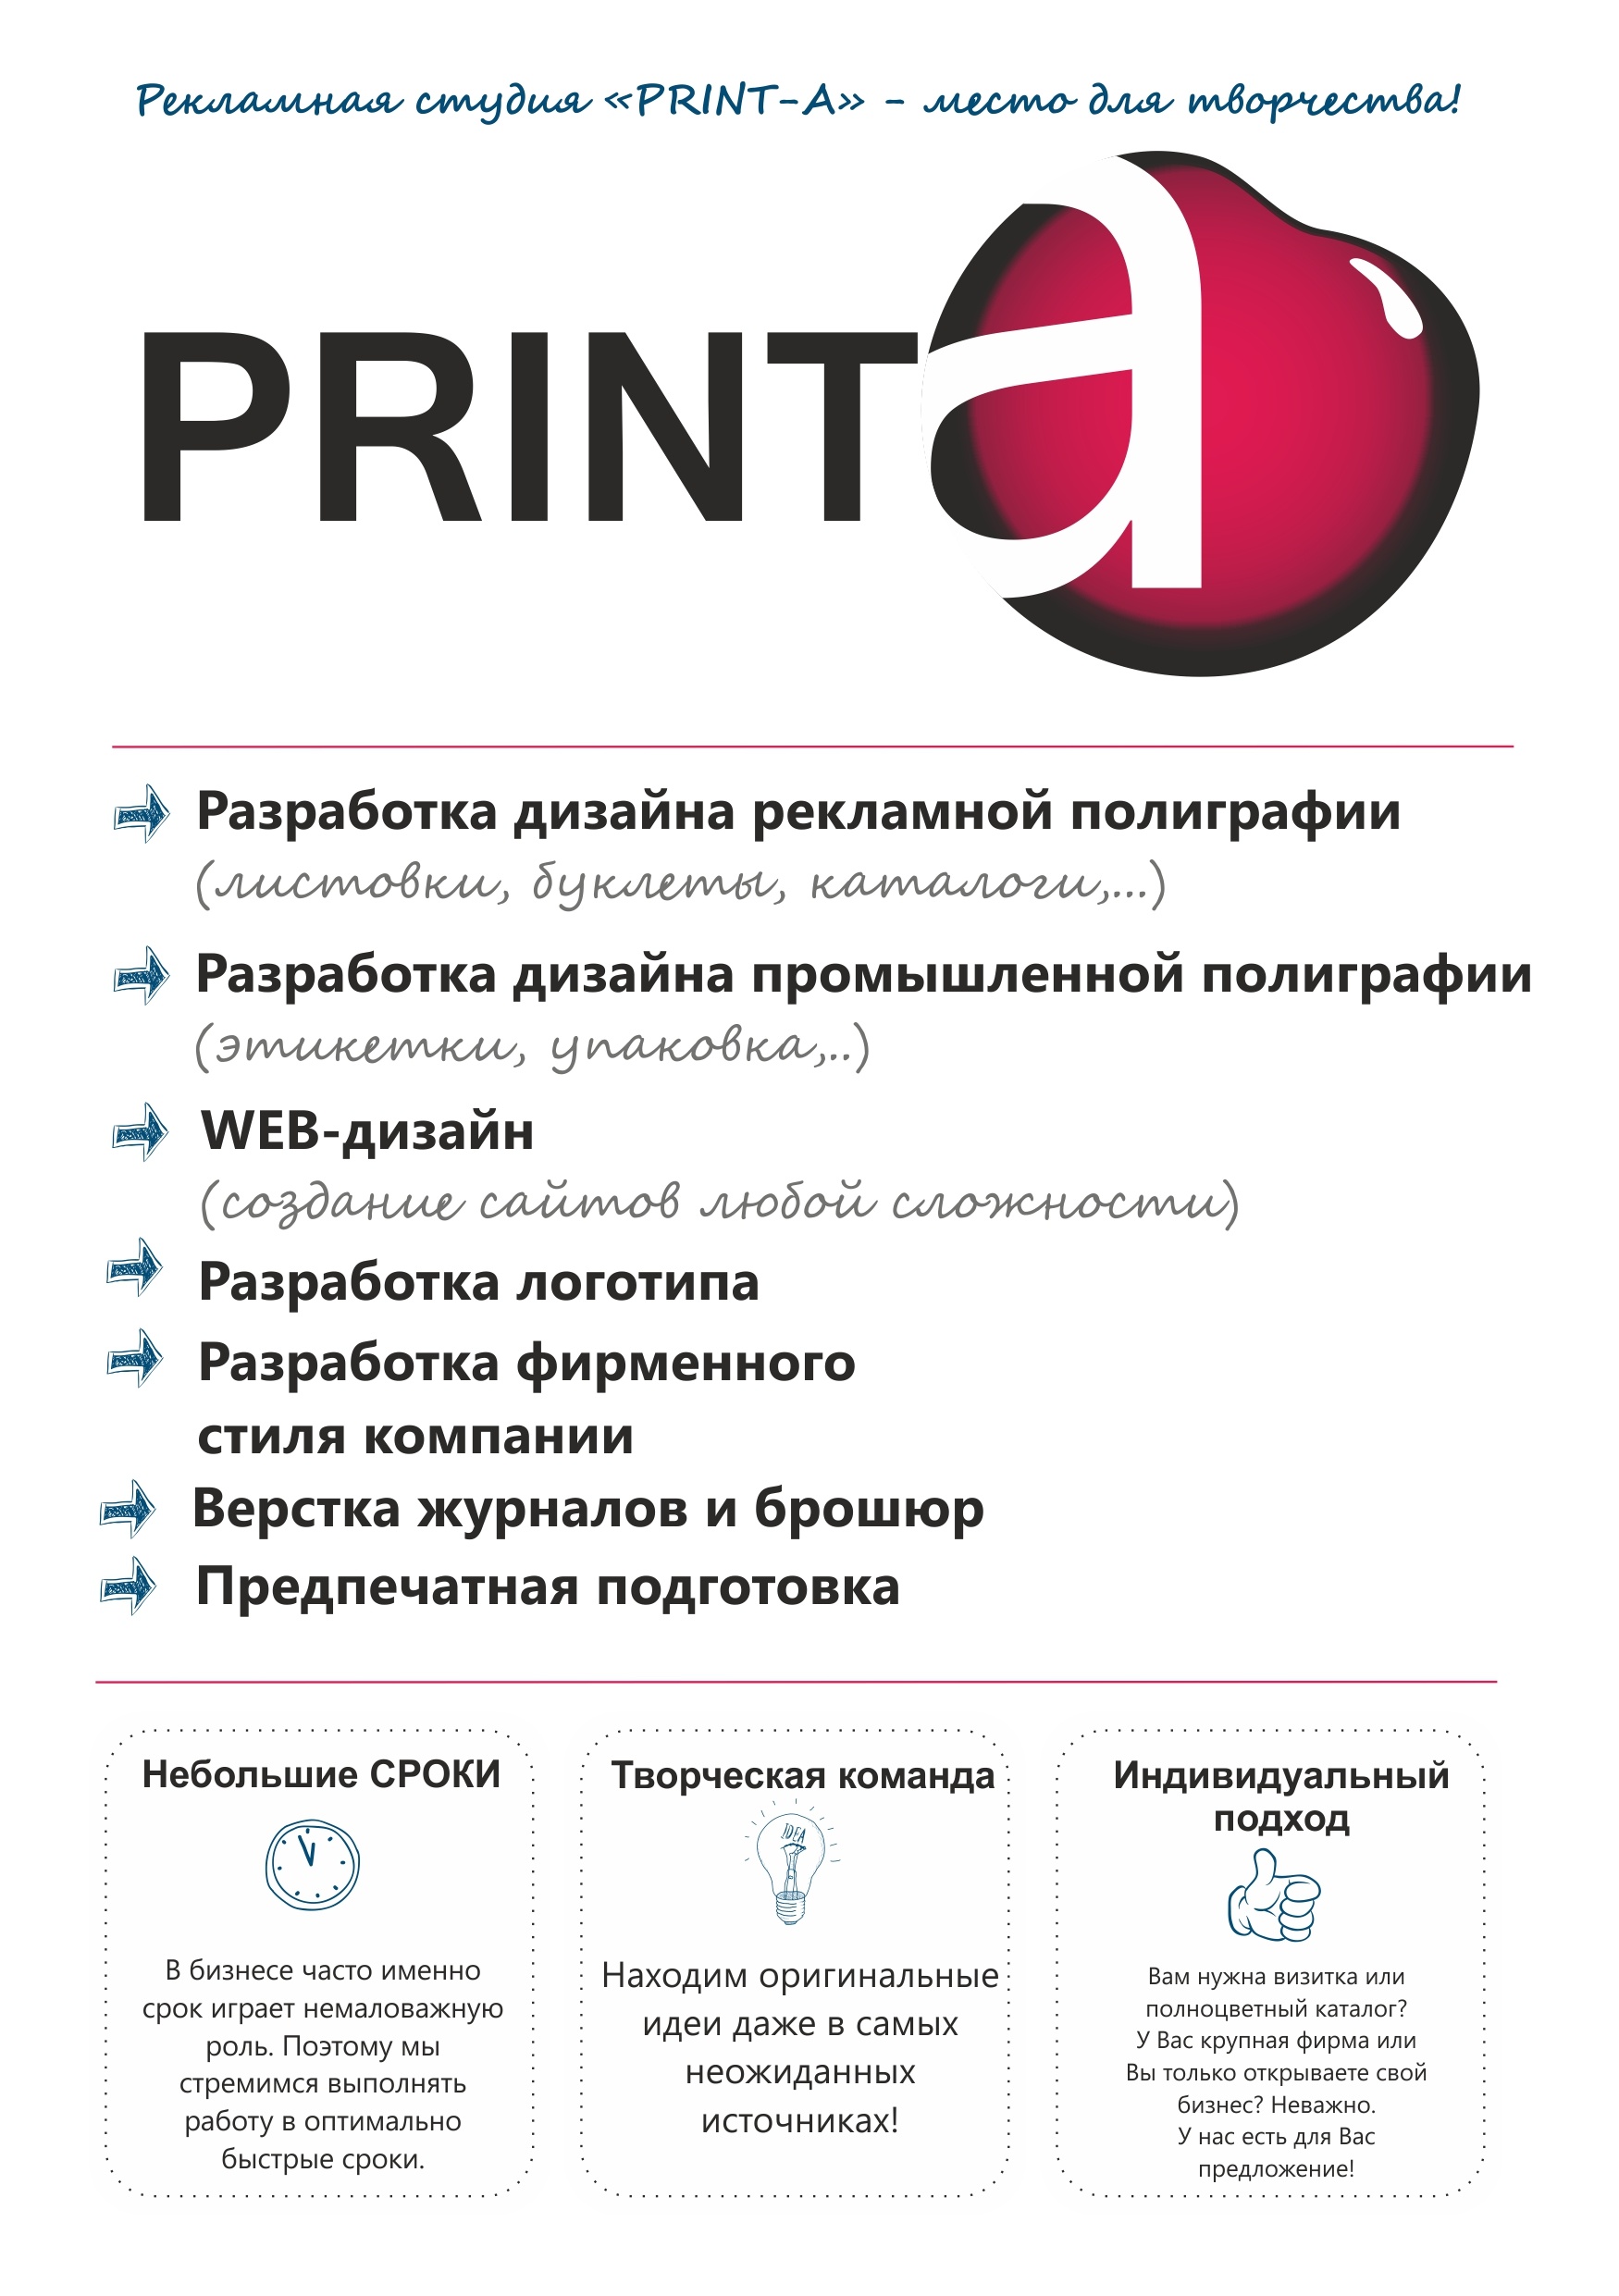 Print-A - рекламная студия